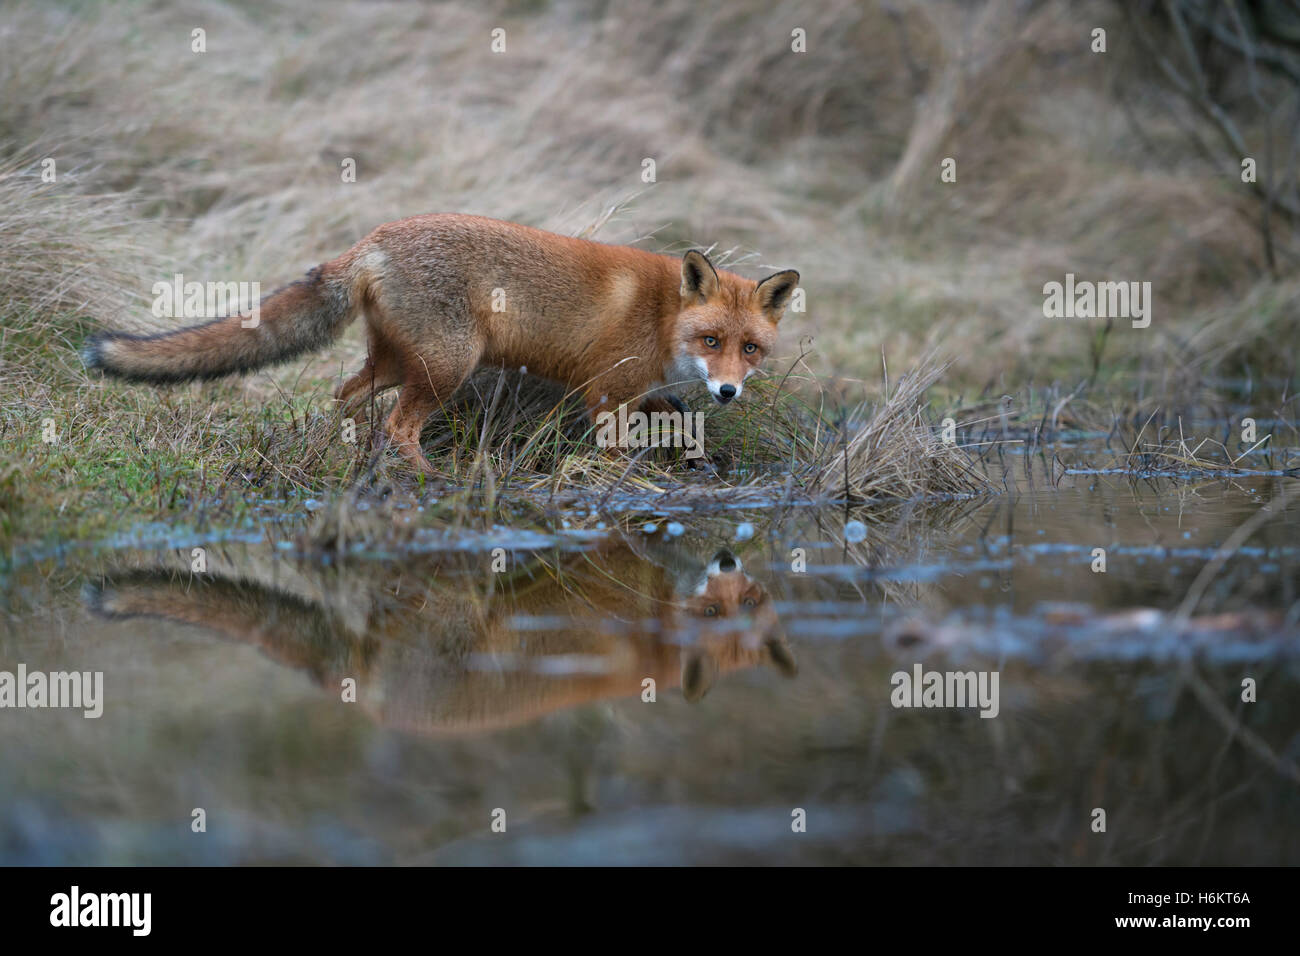 Rotfuchs (Vulpes Vulpes) am Rande des kleinen Naturteich, durstig zu sein scheint, sieht überrascht, Spiegelung im Wasser. Stockfoto